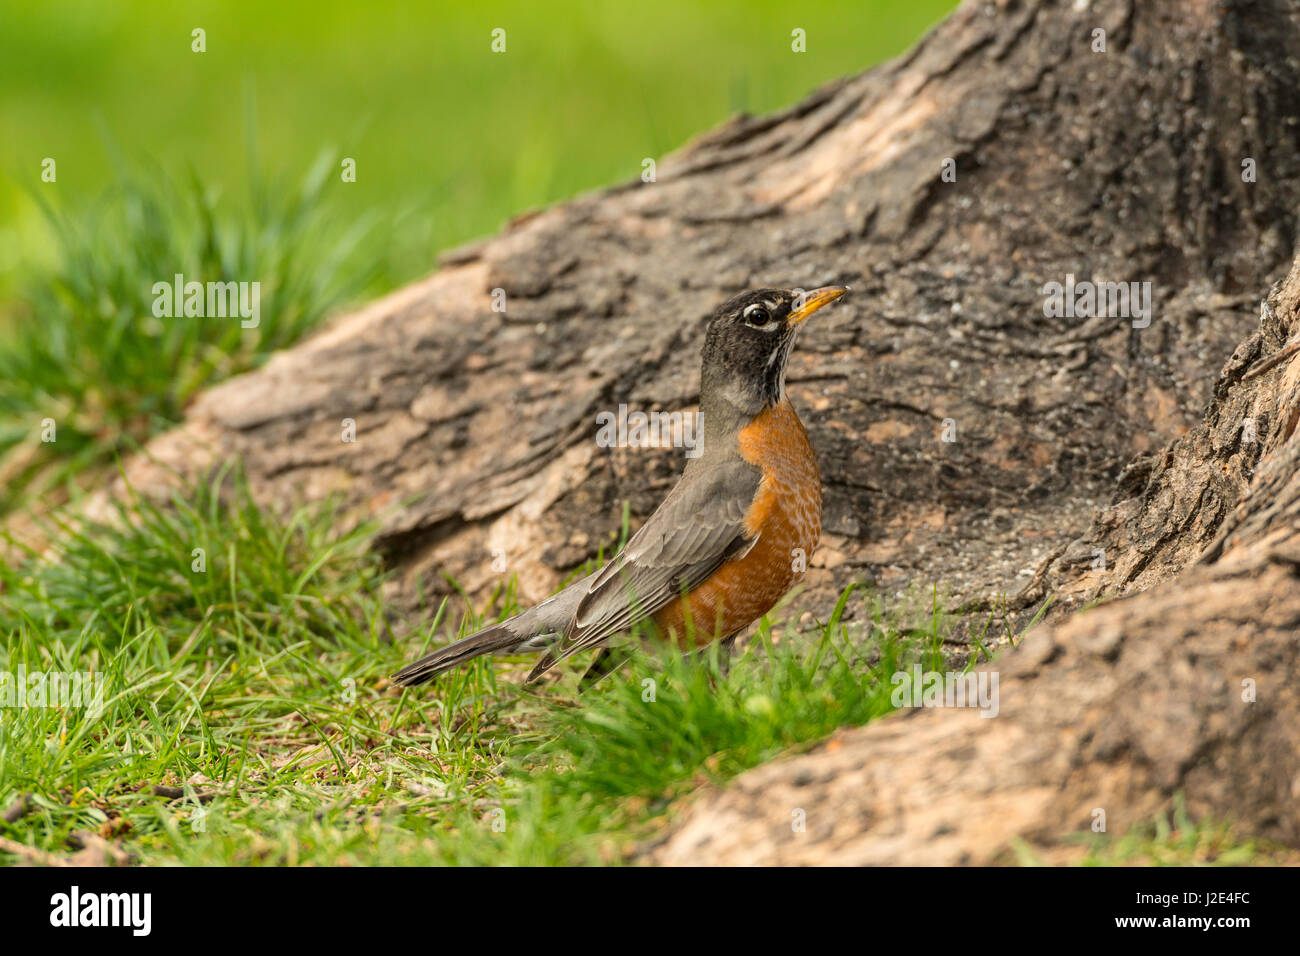 American Robin rovistando in area erbosa. Foto Stock